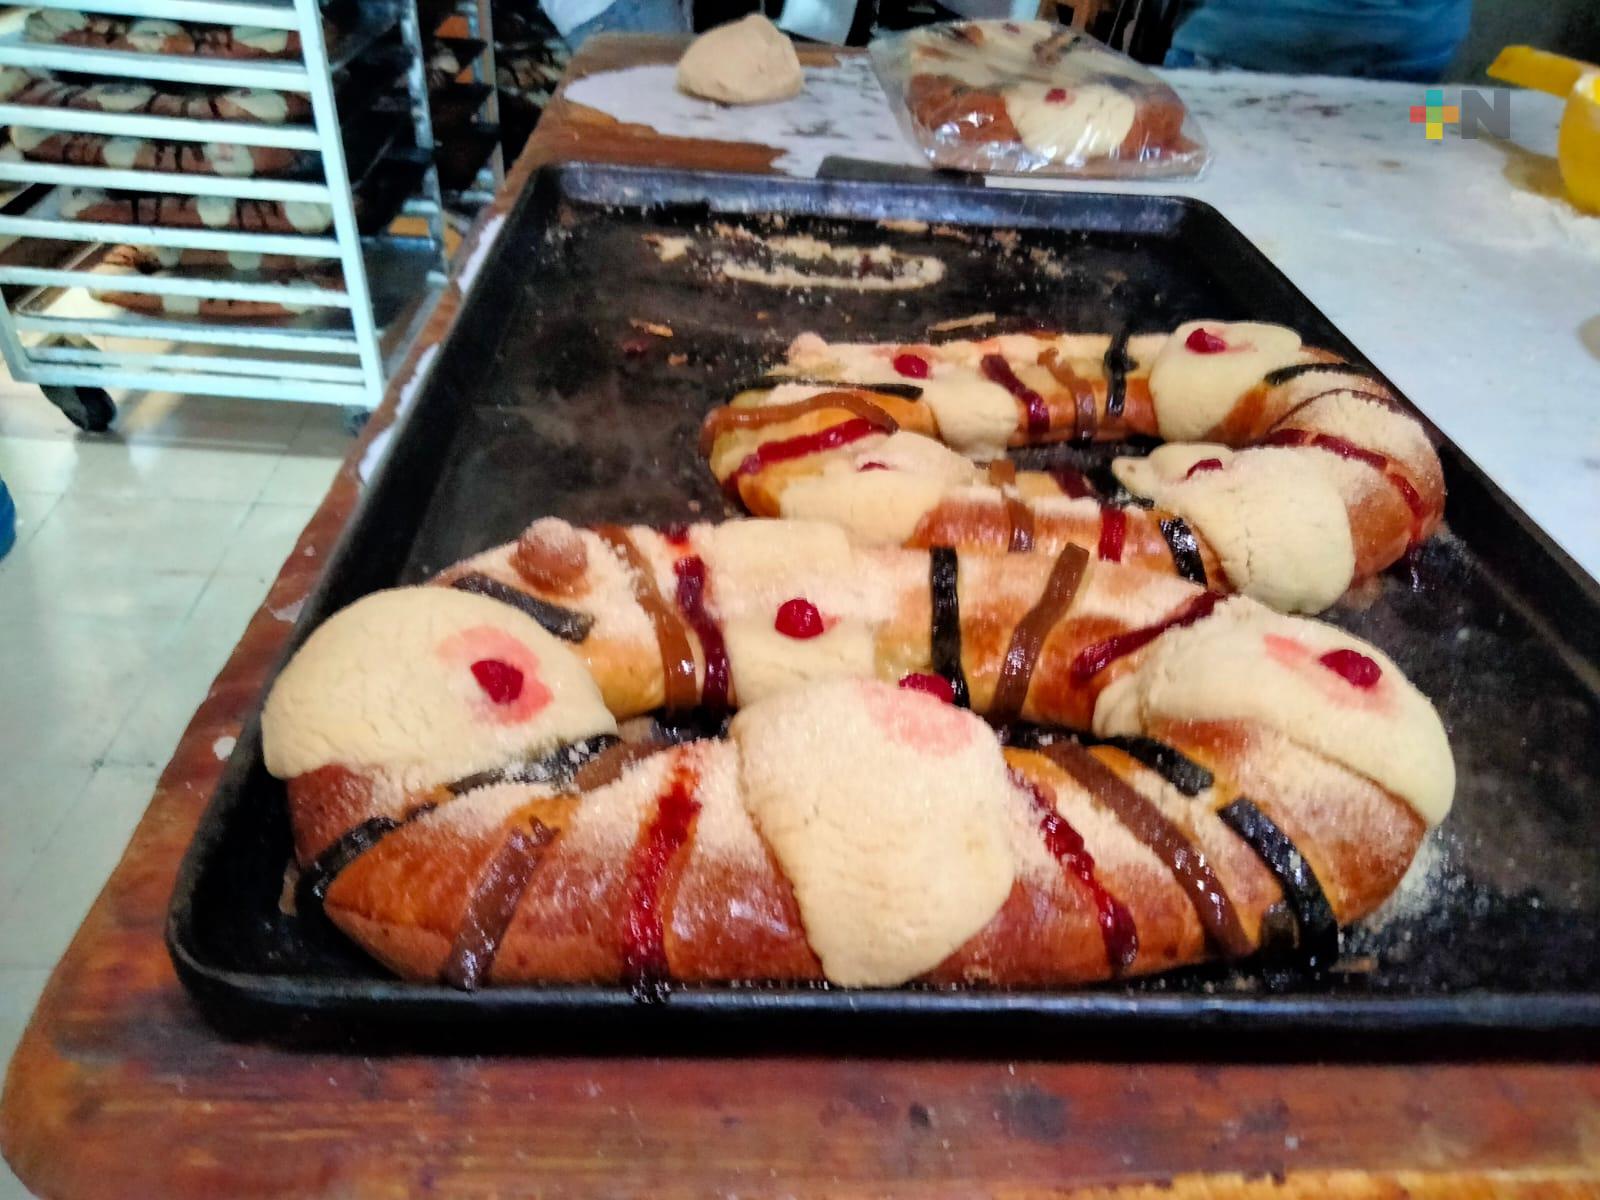 Panadería “Tío Nel” tienen listas las roscas de Reyes